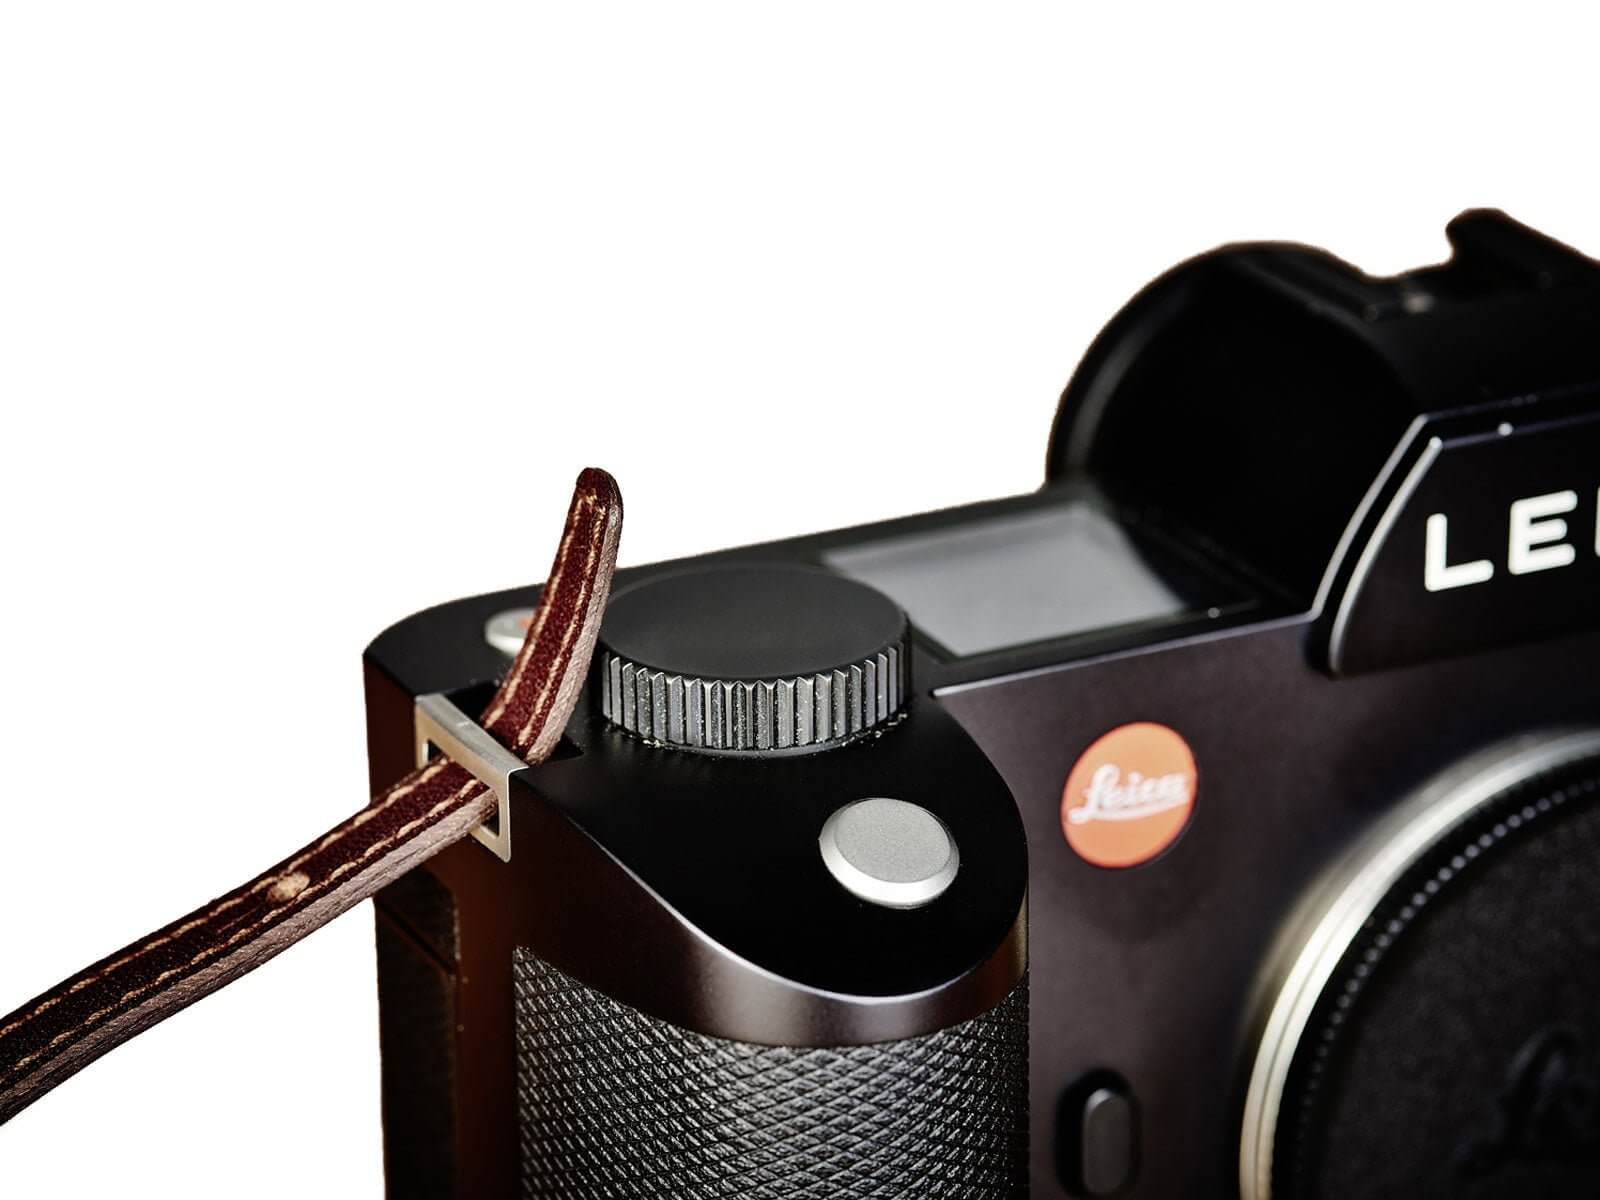 Camera strap RHEIN grey/black/red